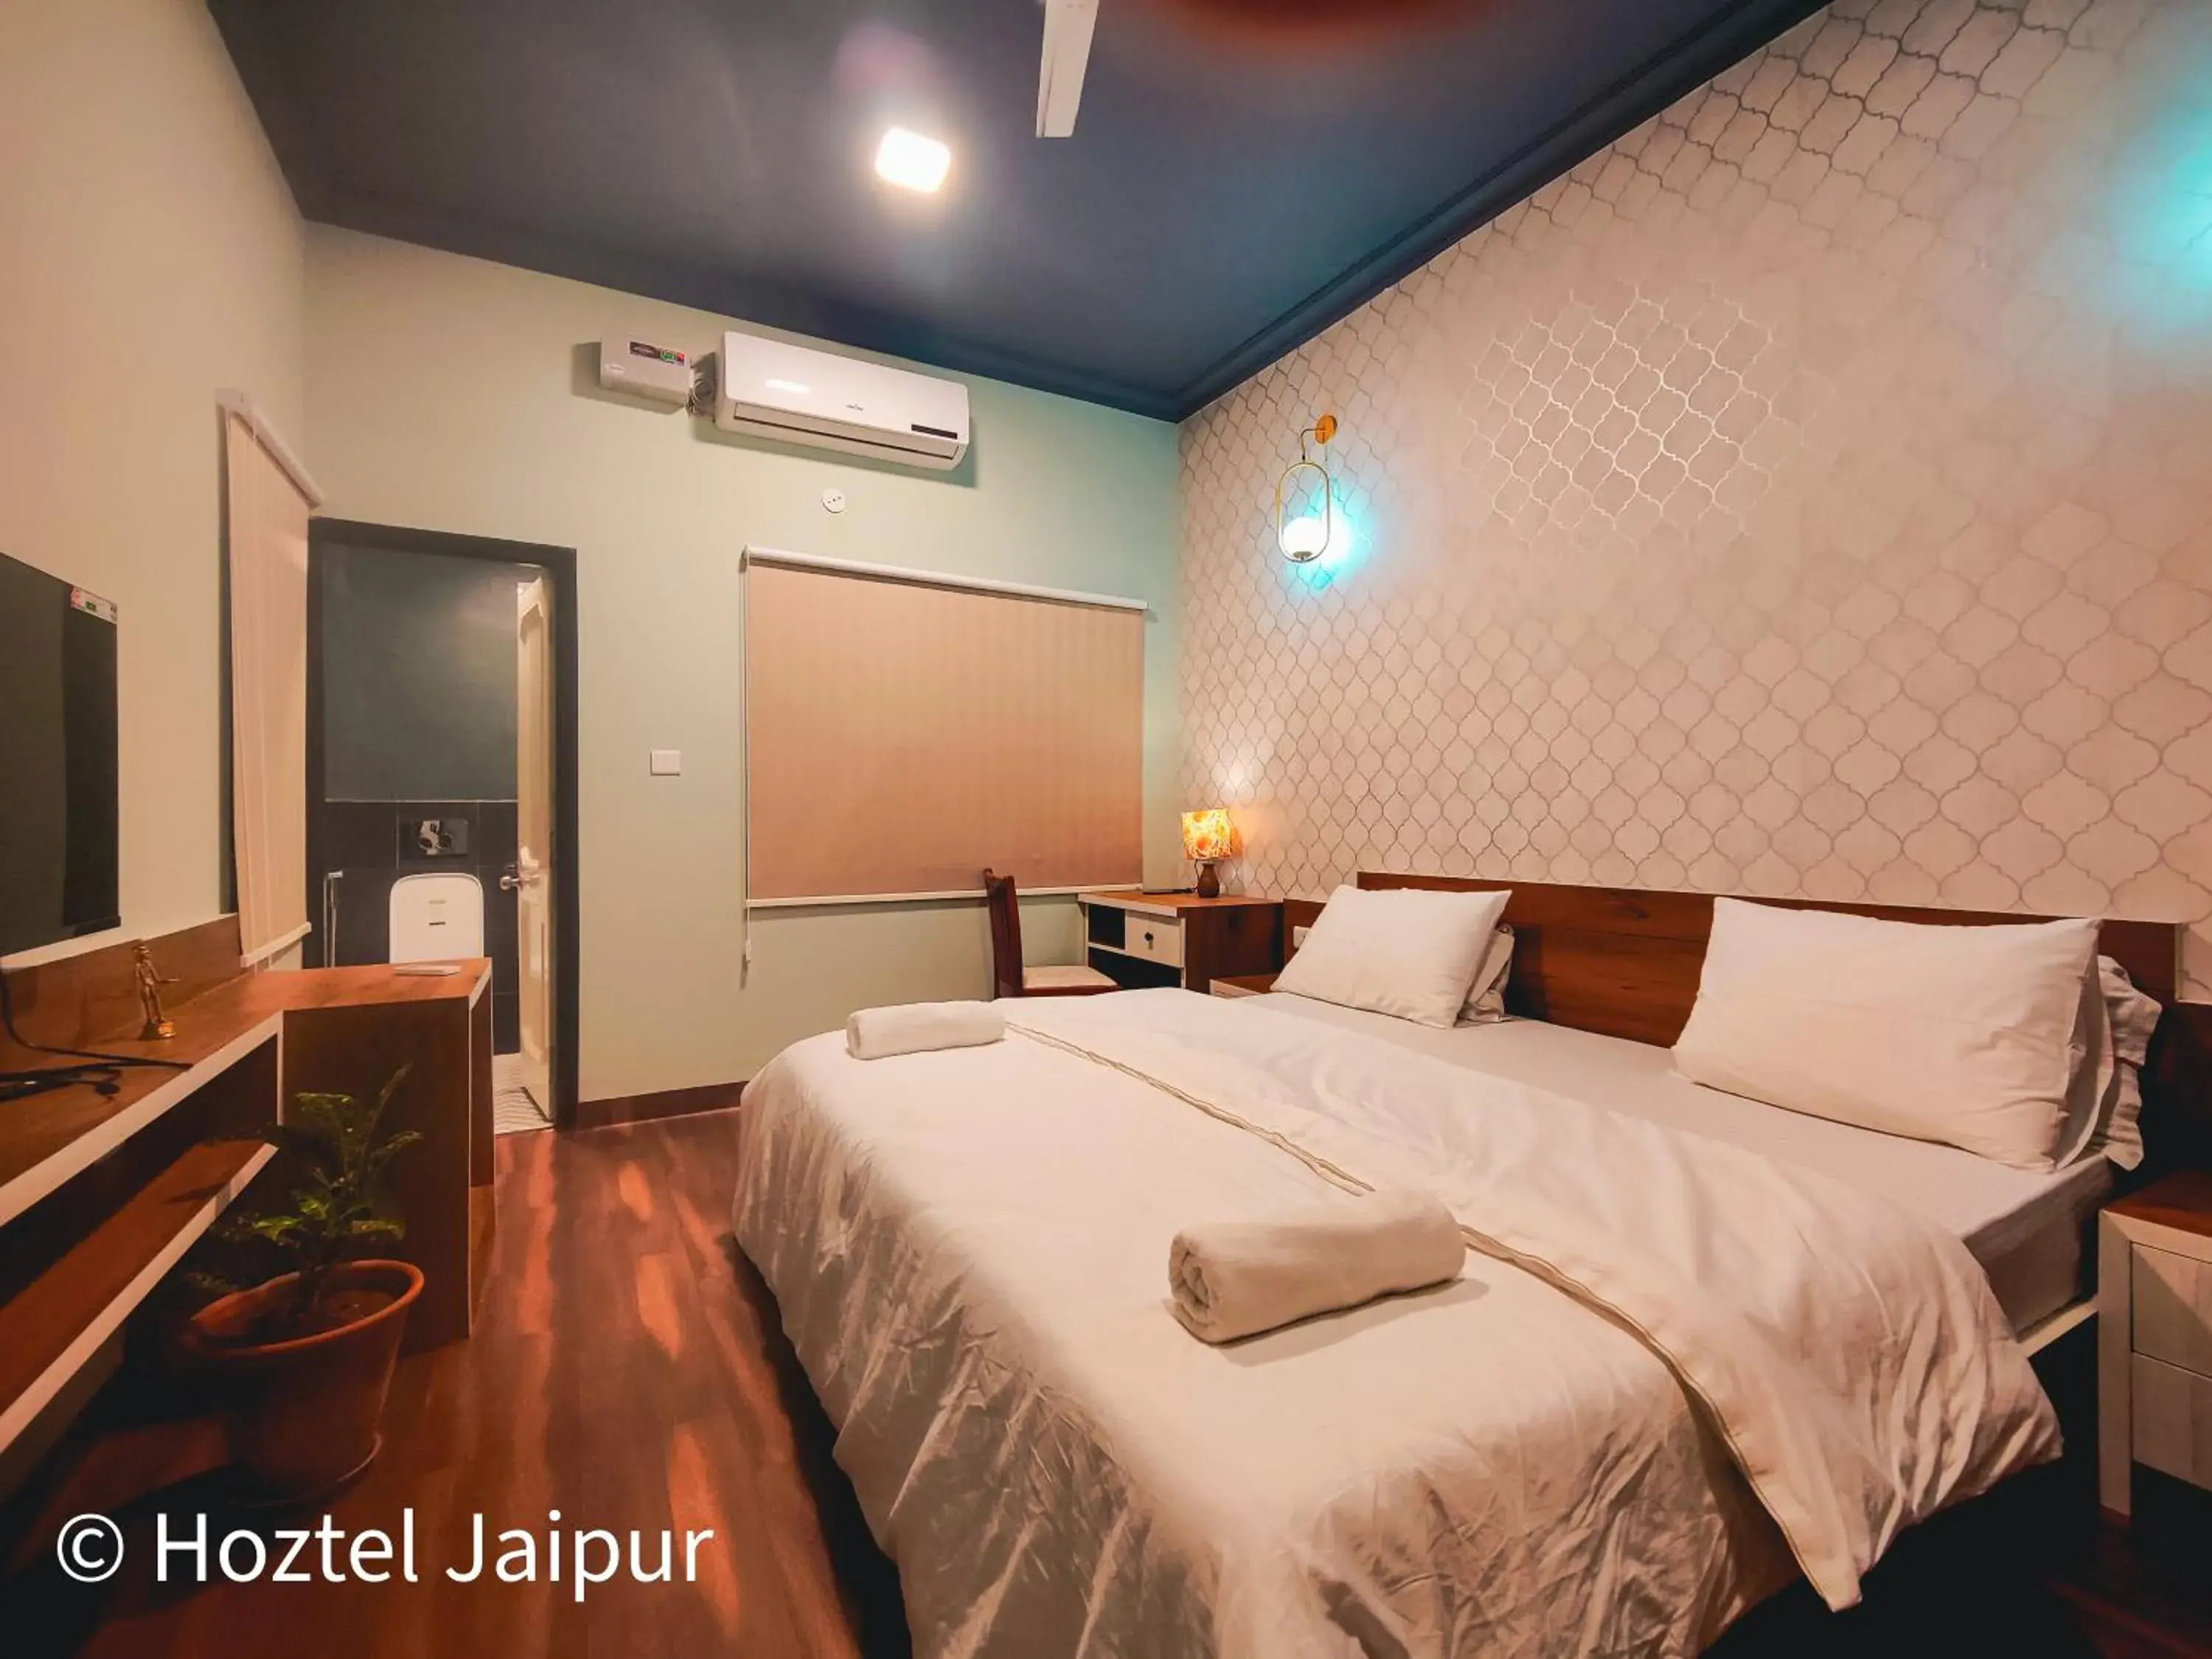 Bedroom, Bed in Hoztel Jaipur